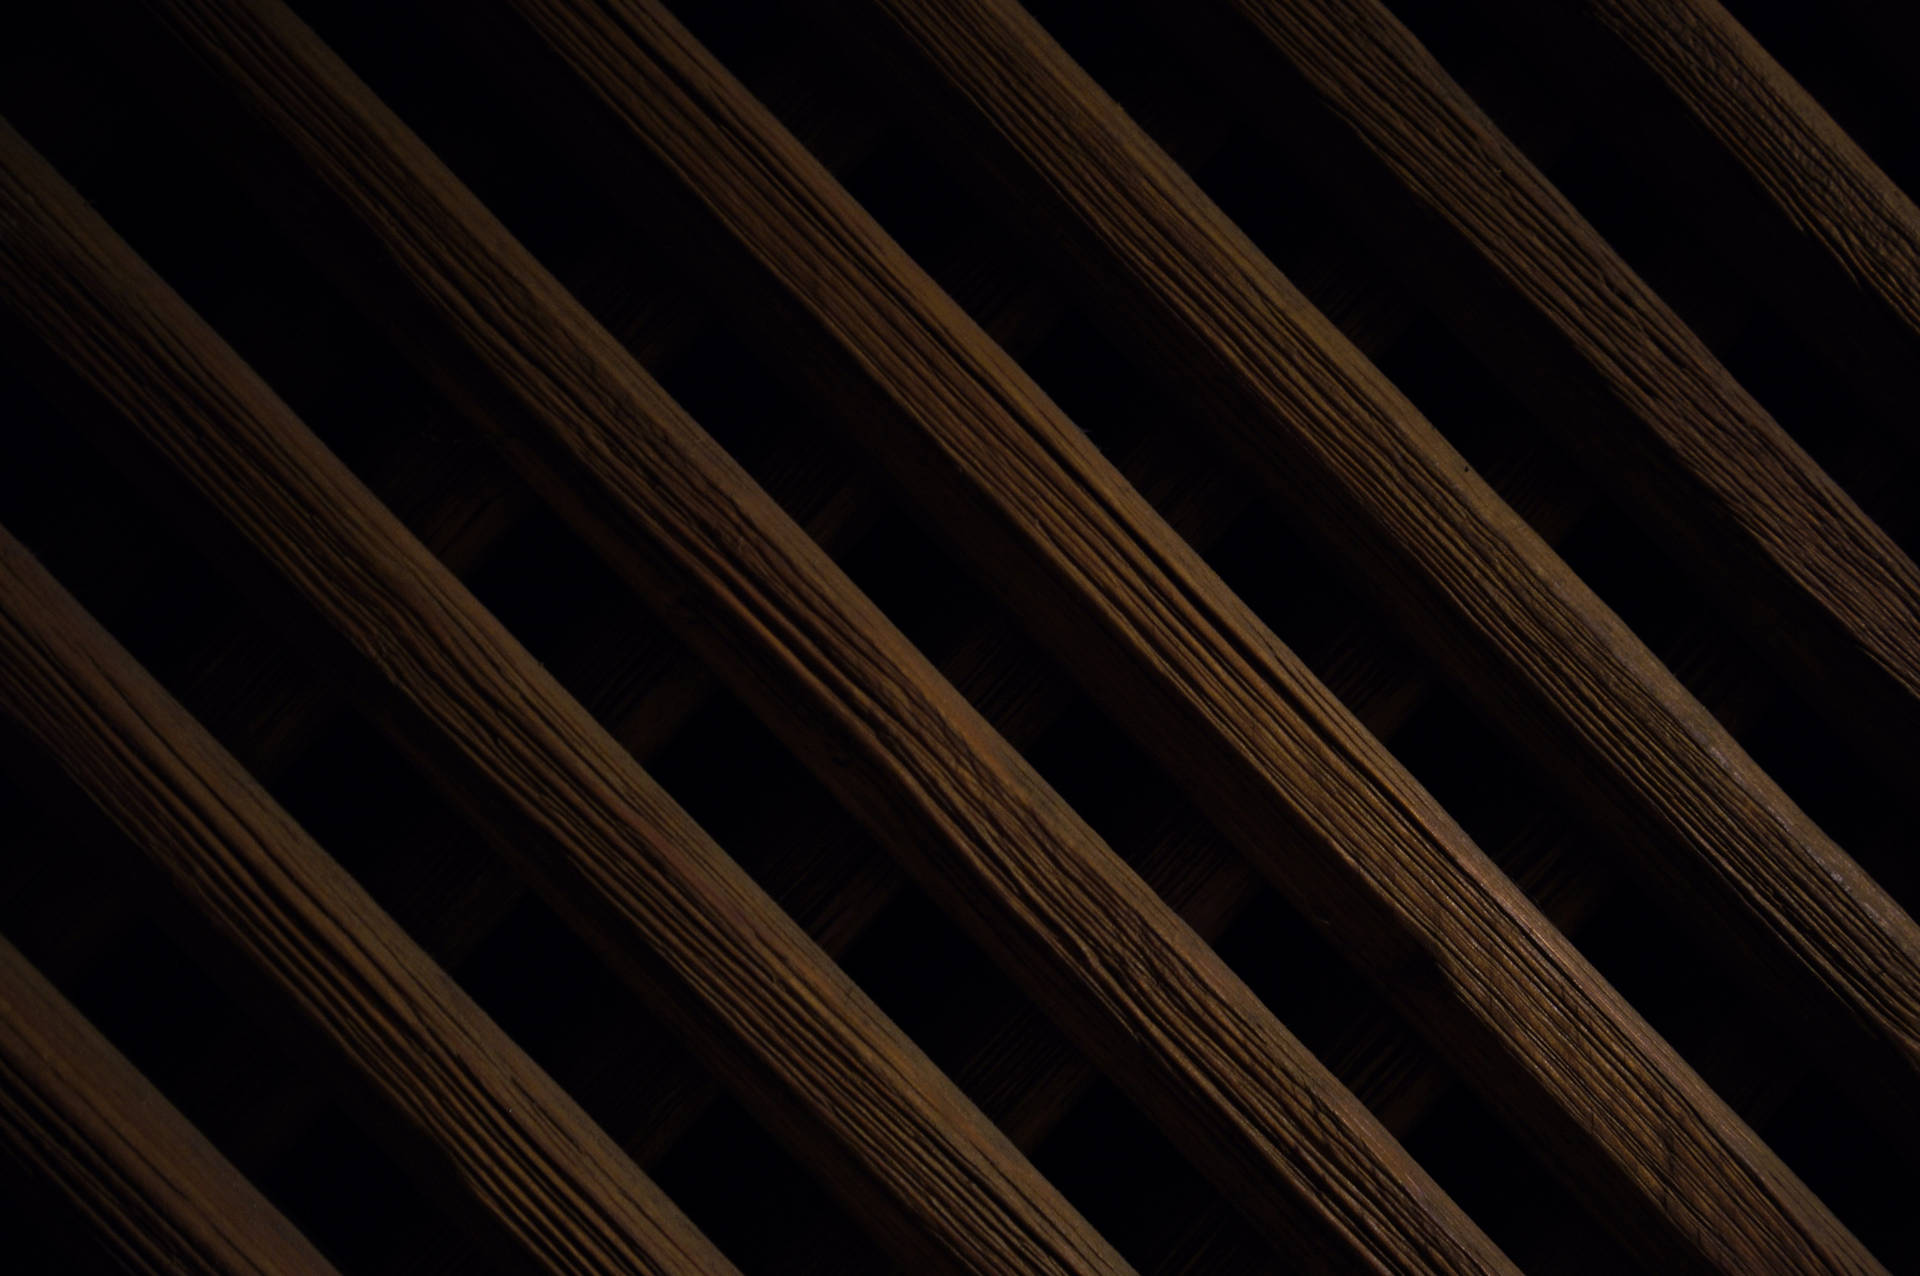 Diagonal Stripes Wood Texture Wallpaper